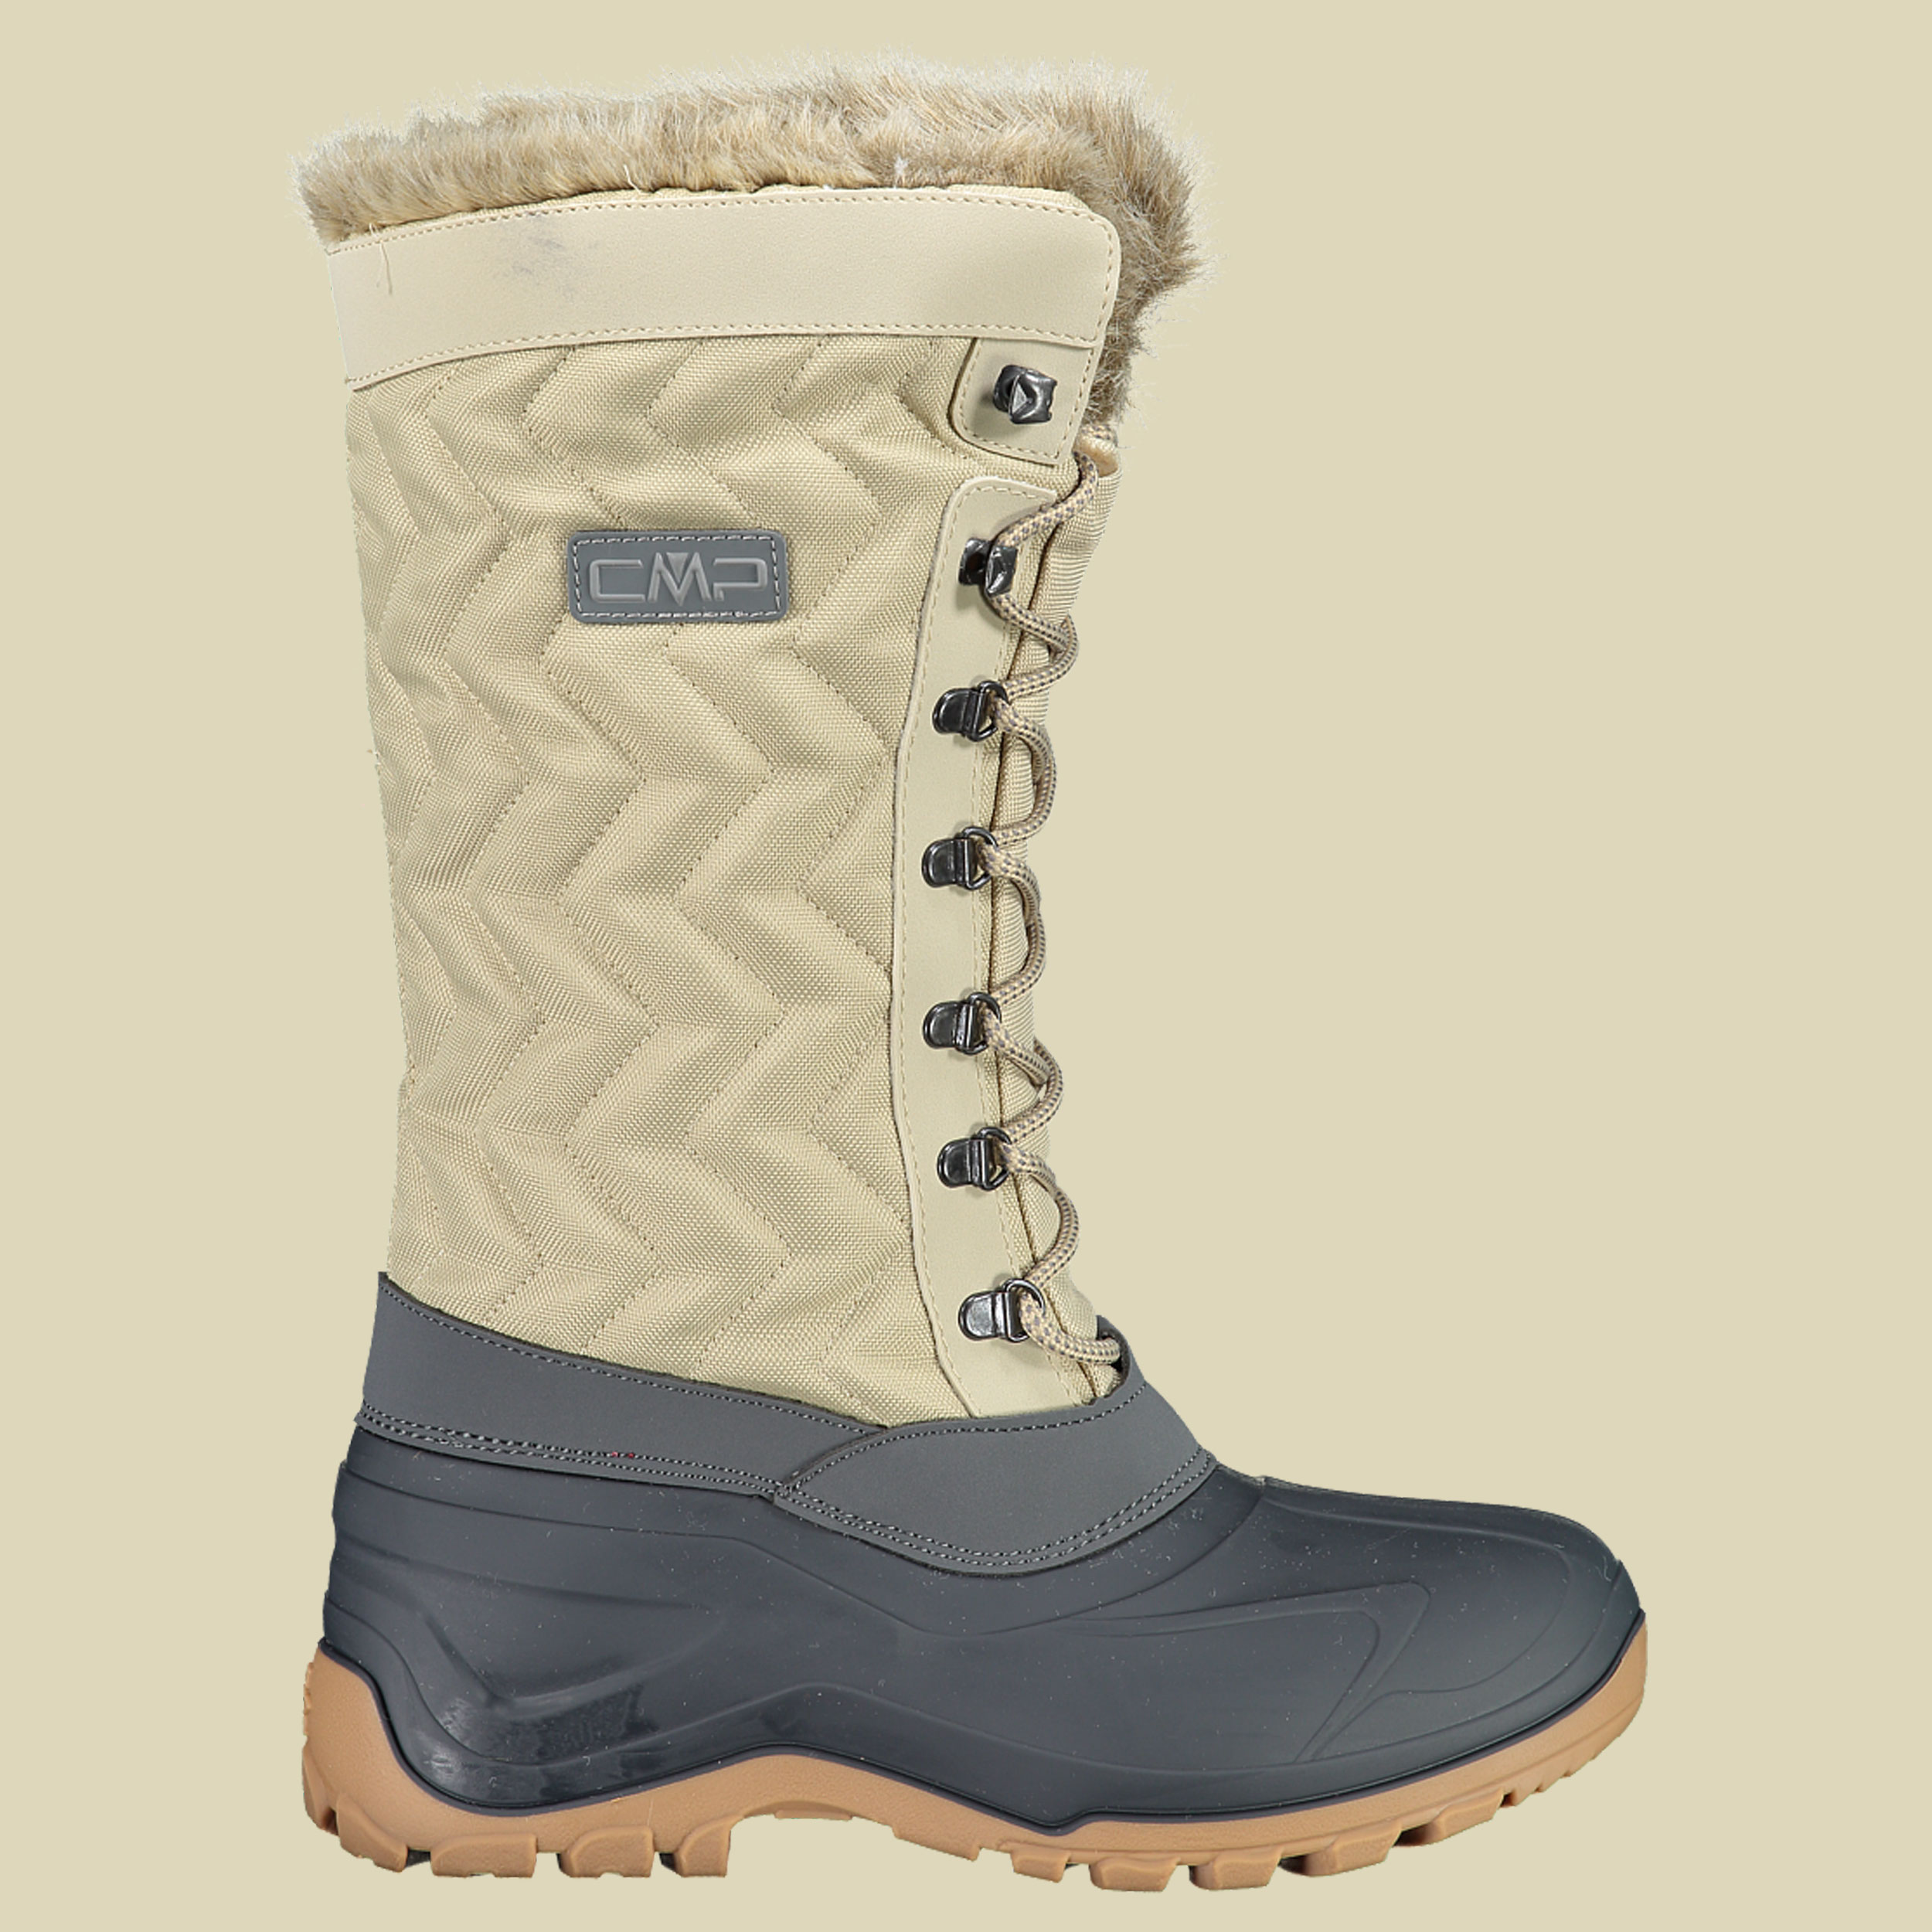 Nietos WMN Snow Boots Women Größe 37 Farbe P631 sand